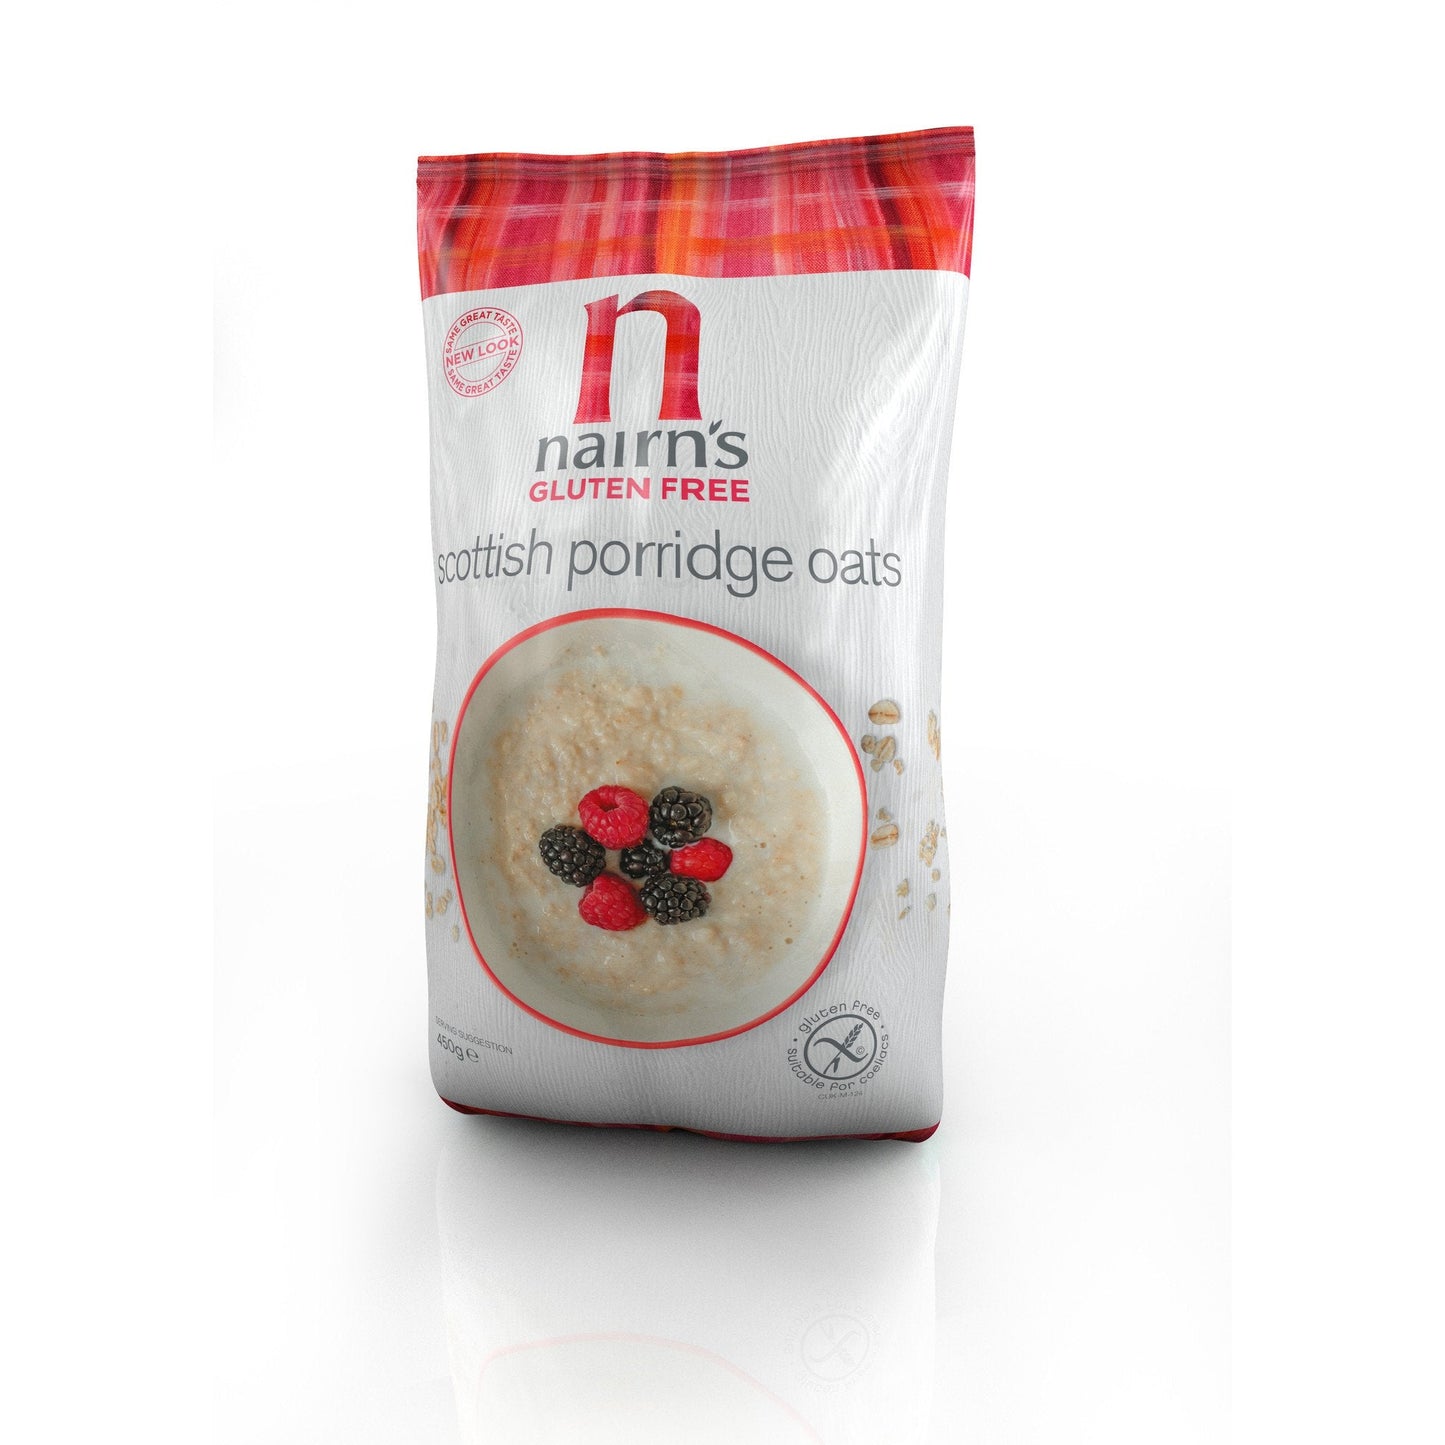 Nairns Gluten Free Porridge Oats, 450g - Just Natural